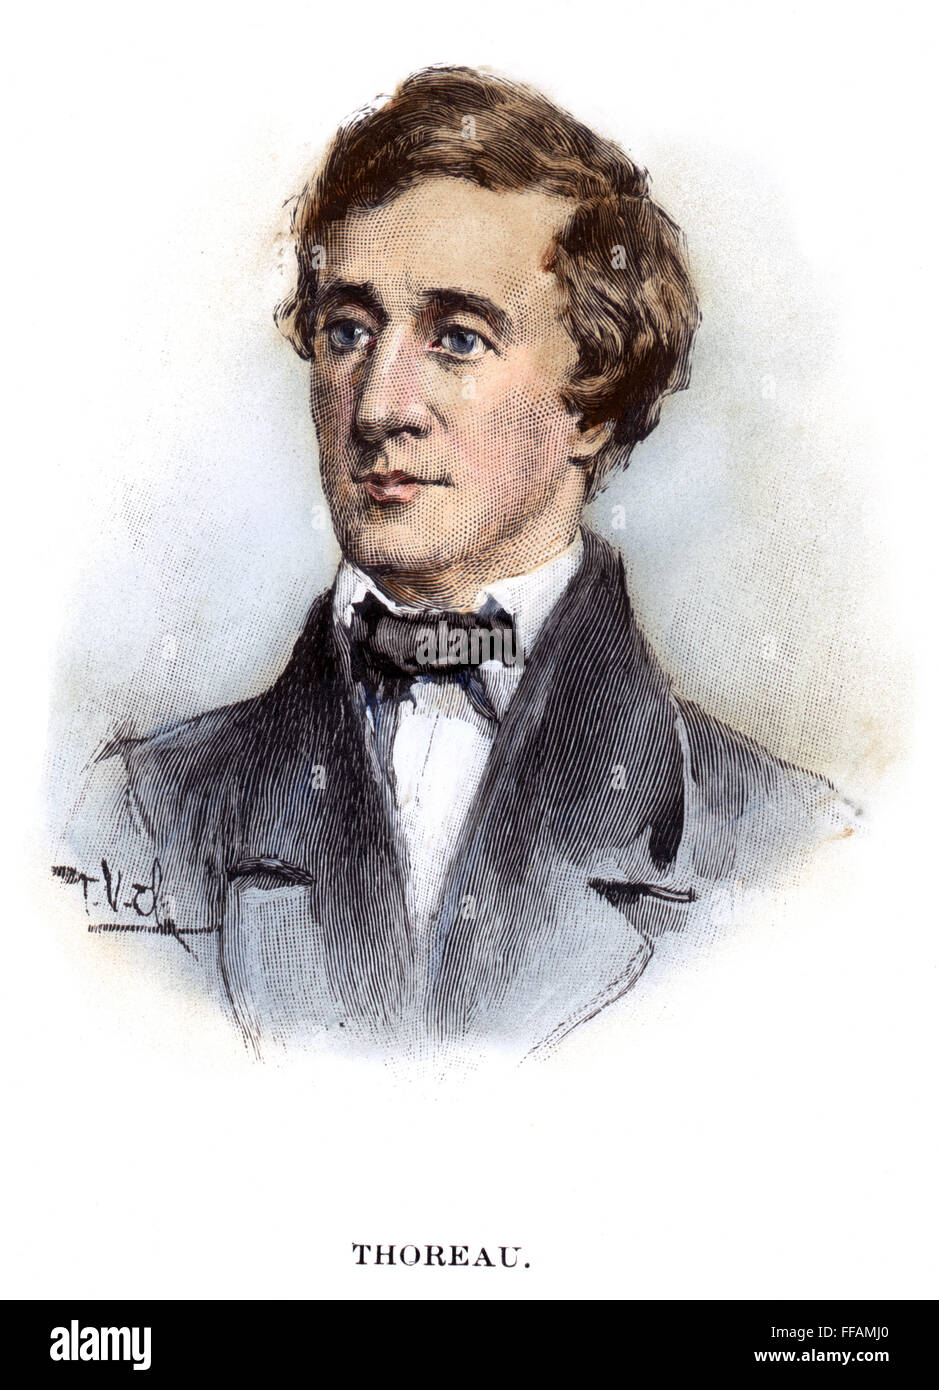 Thoreau /n(1817-1862). US-amerikanischer Schriftsteller. Holzstich, 19. Jahrhundert. Stockfoto